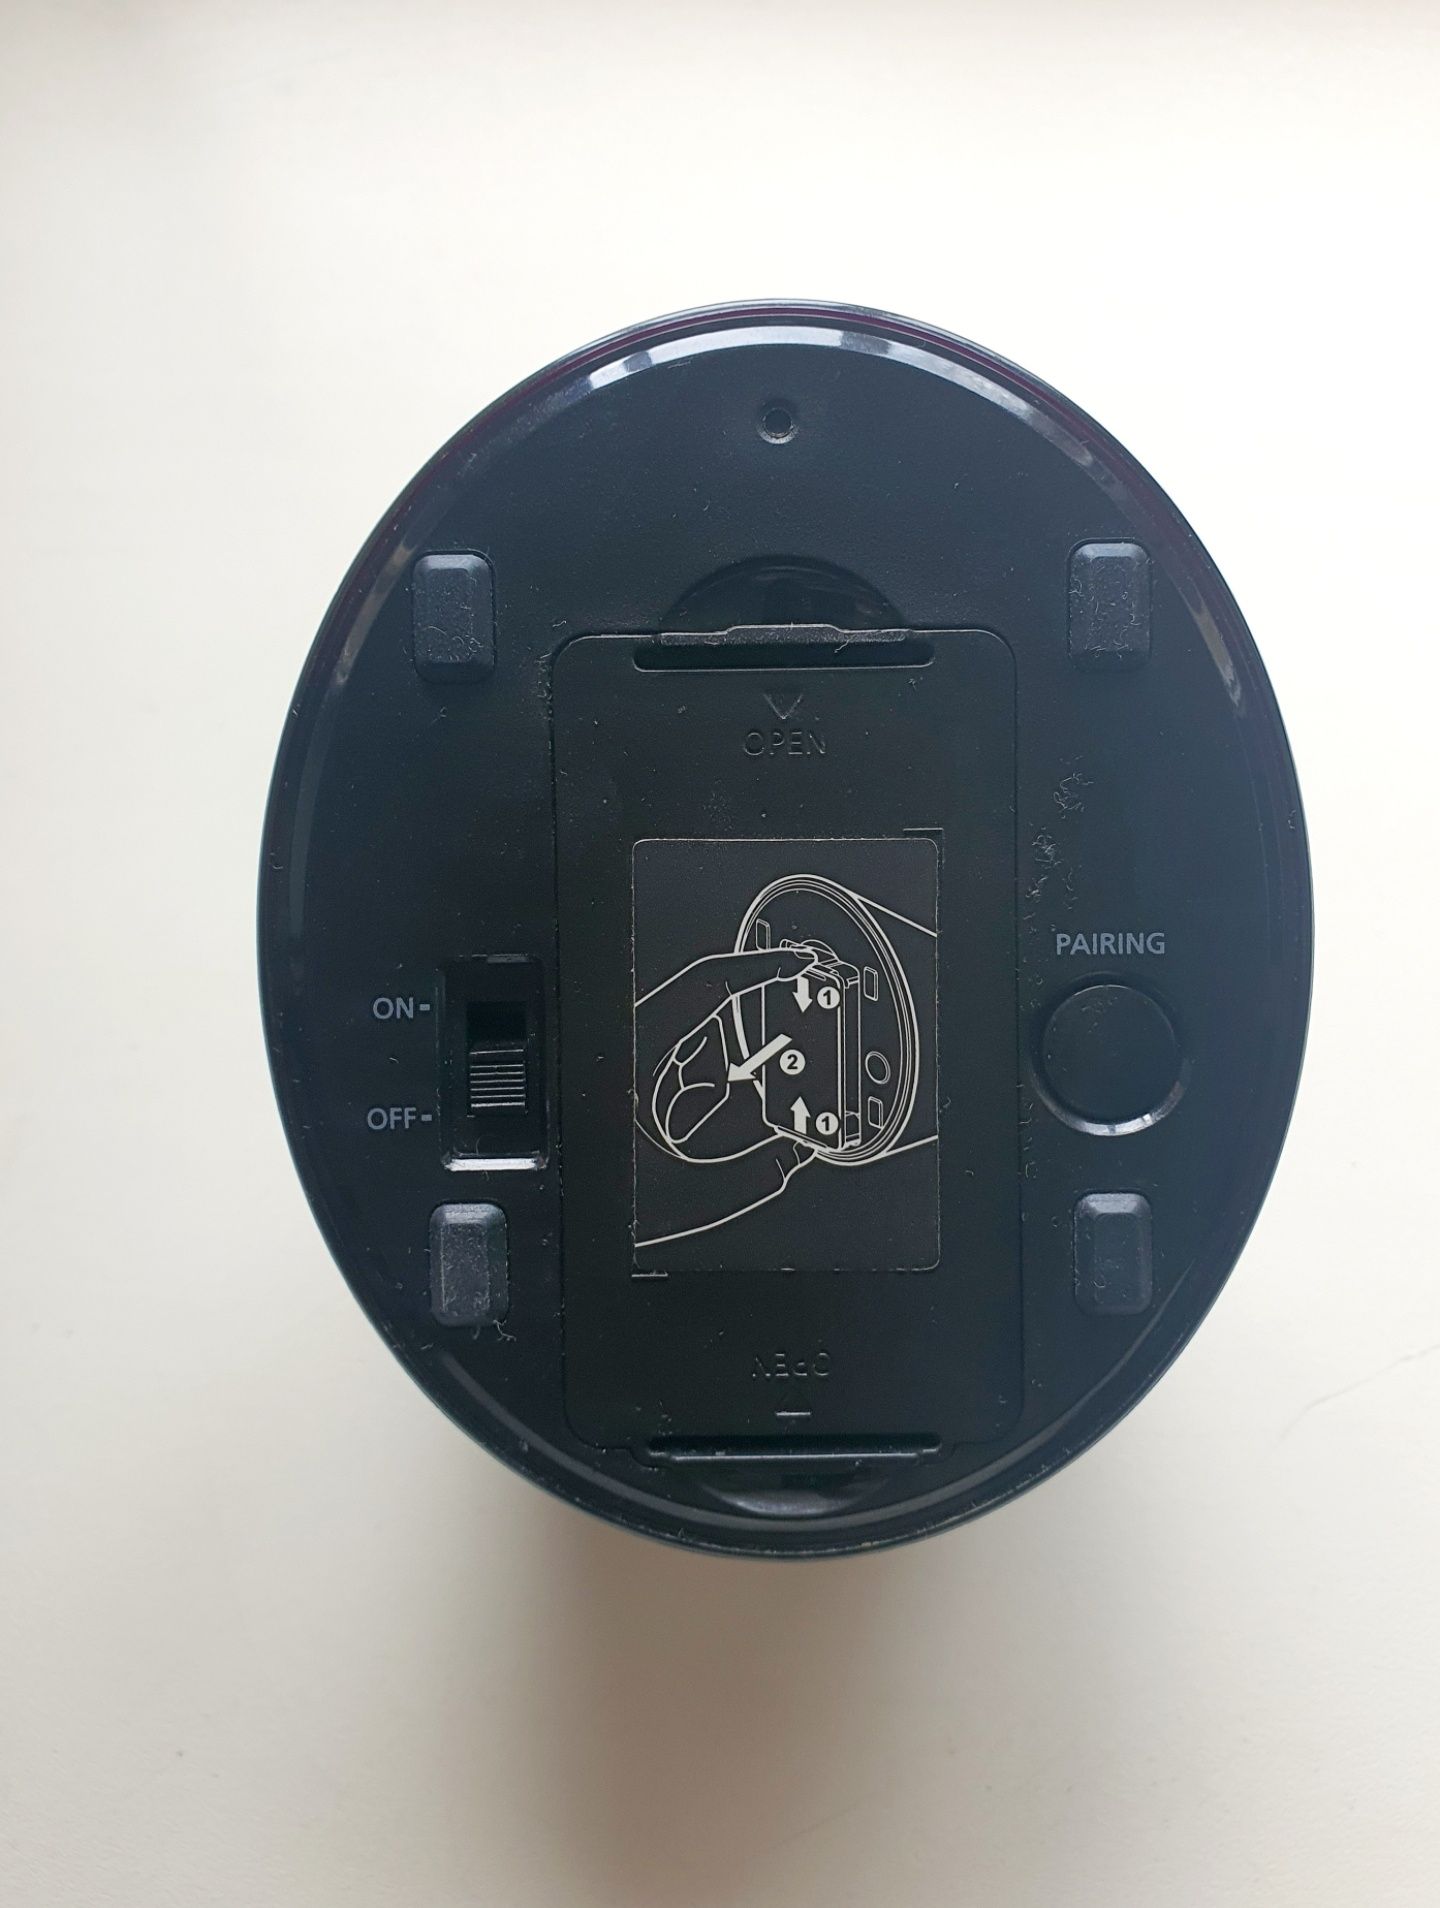 Samsung Smart пульт с голосовым управлением